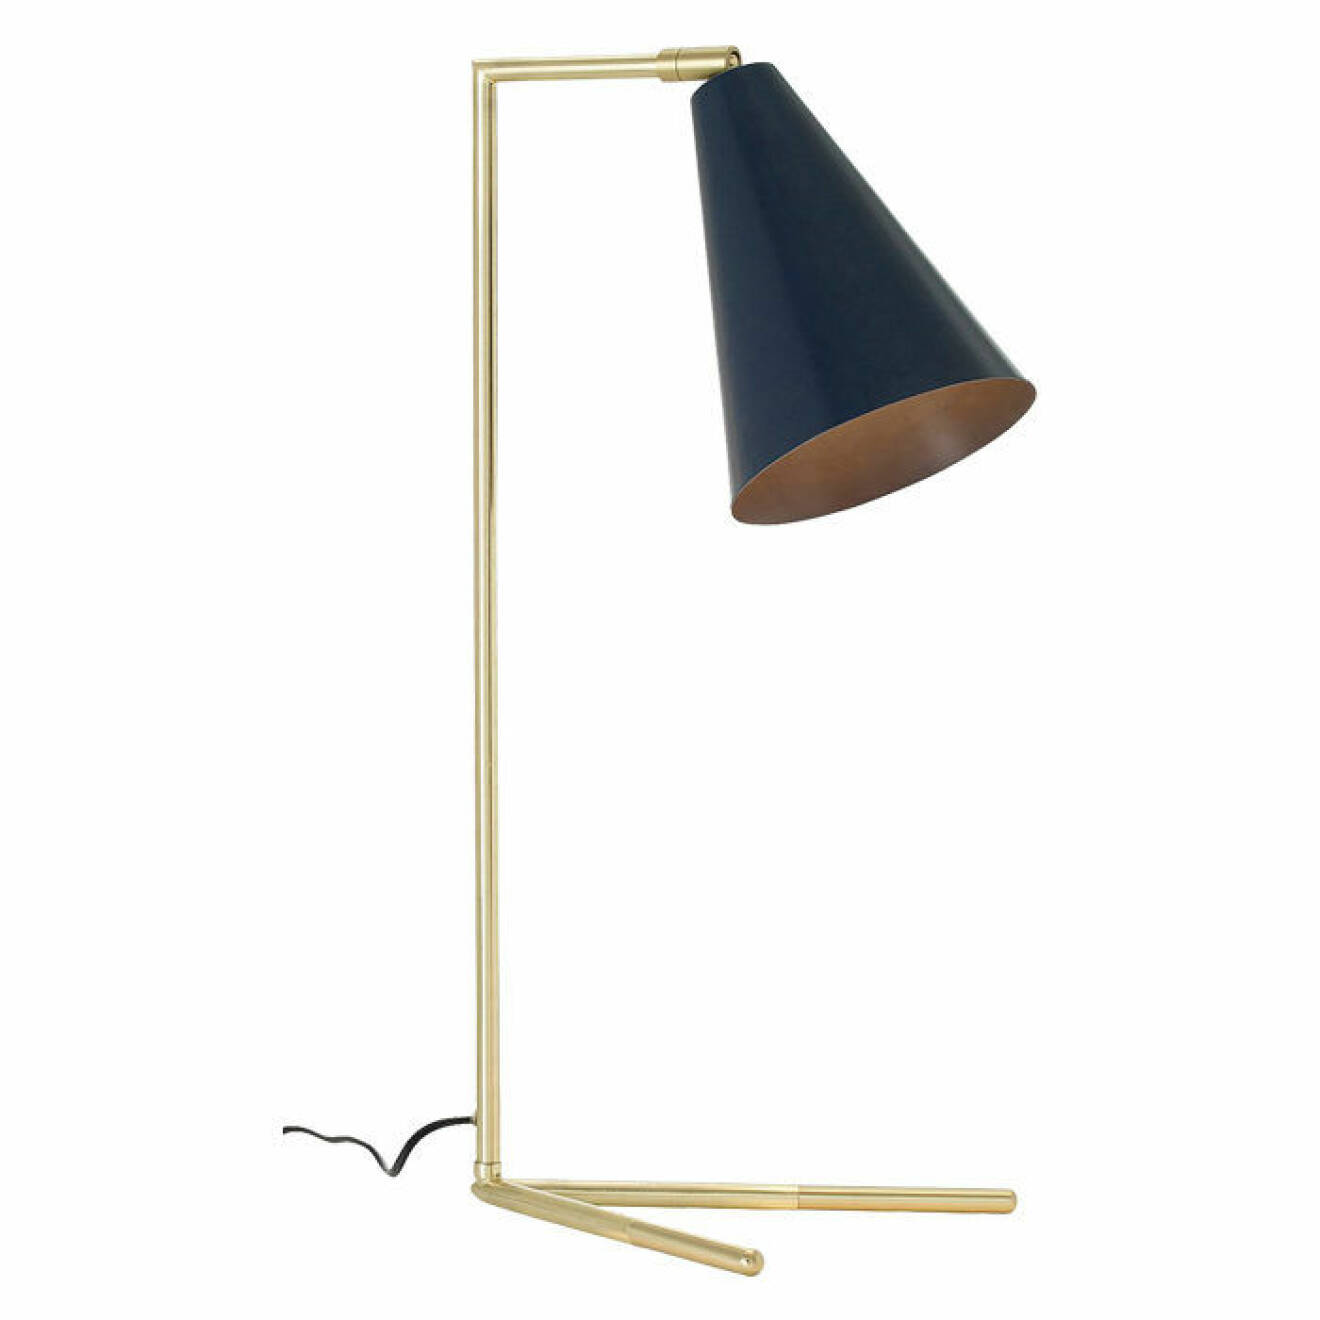 Stilren bordslampa med fot i mässingsfärgad metall och skärm i matt blåmålad metall